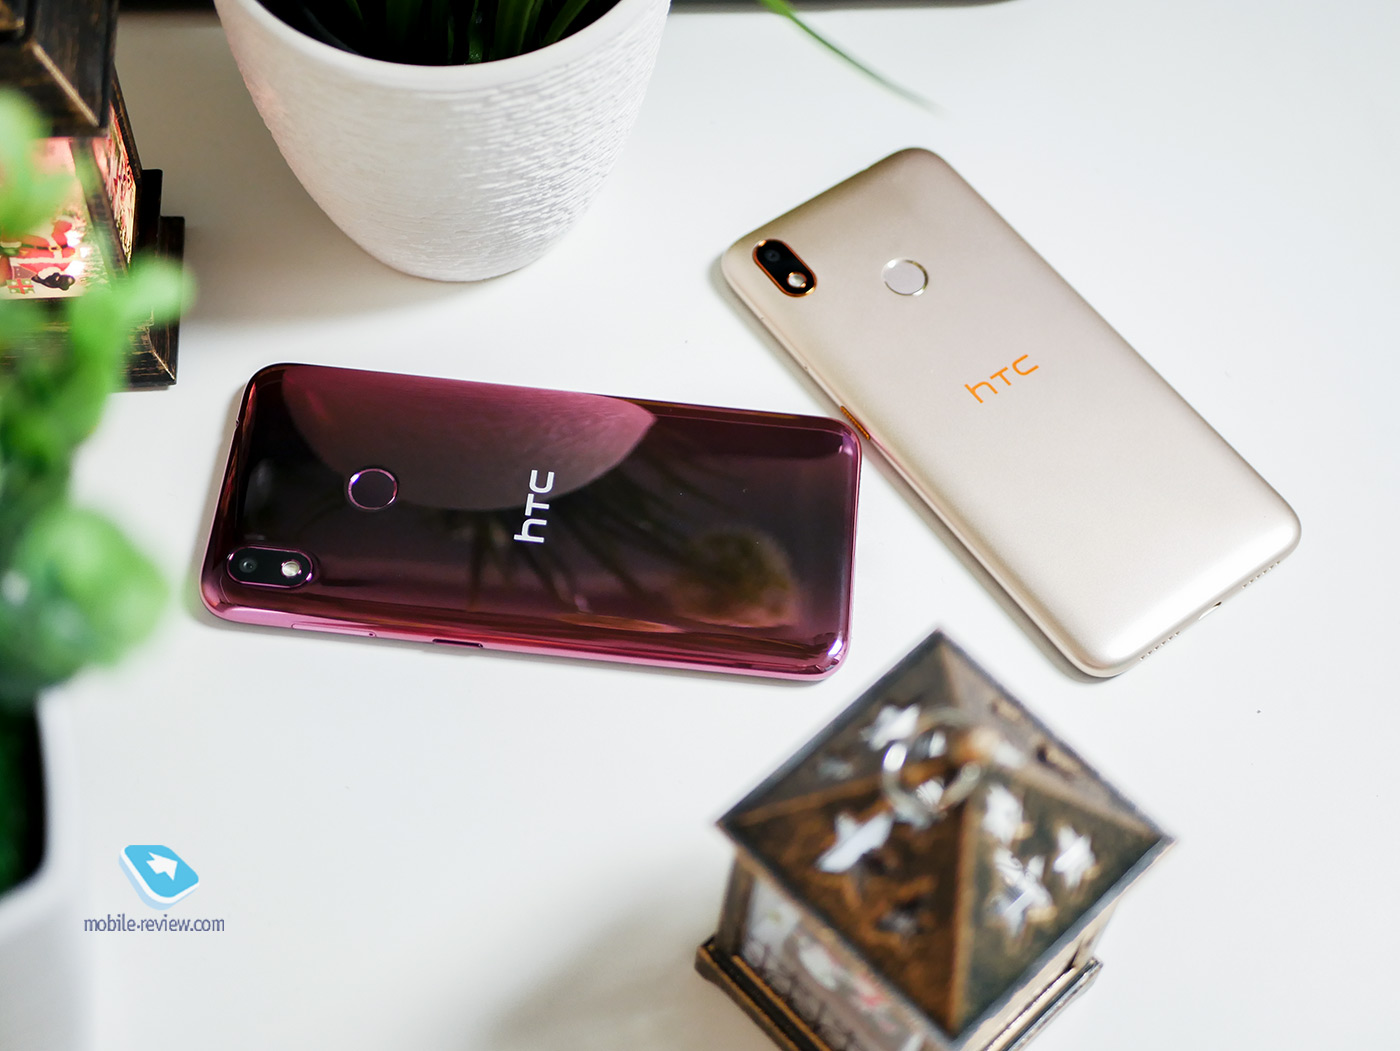 Смартфоны HTC Wildfire E1 и E1 Plus: возвращение легенды?